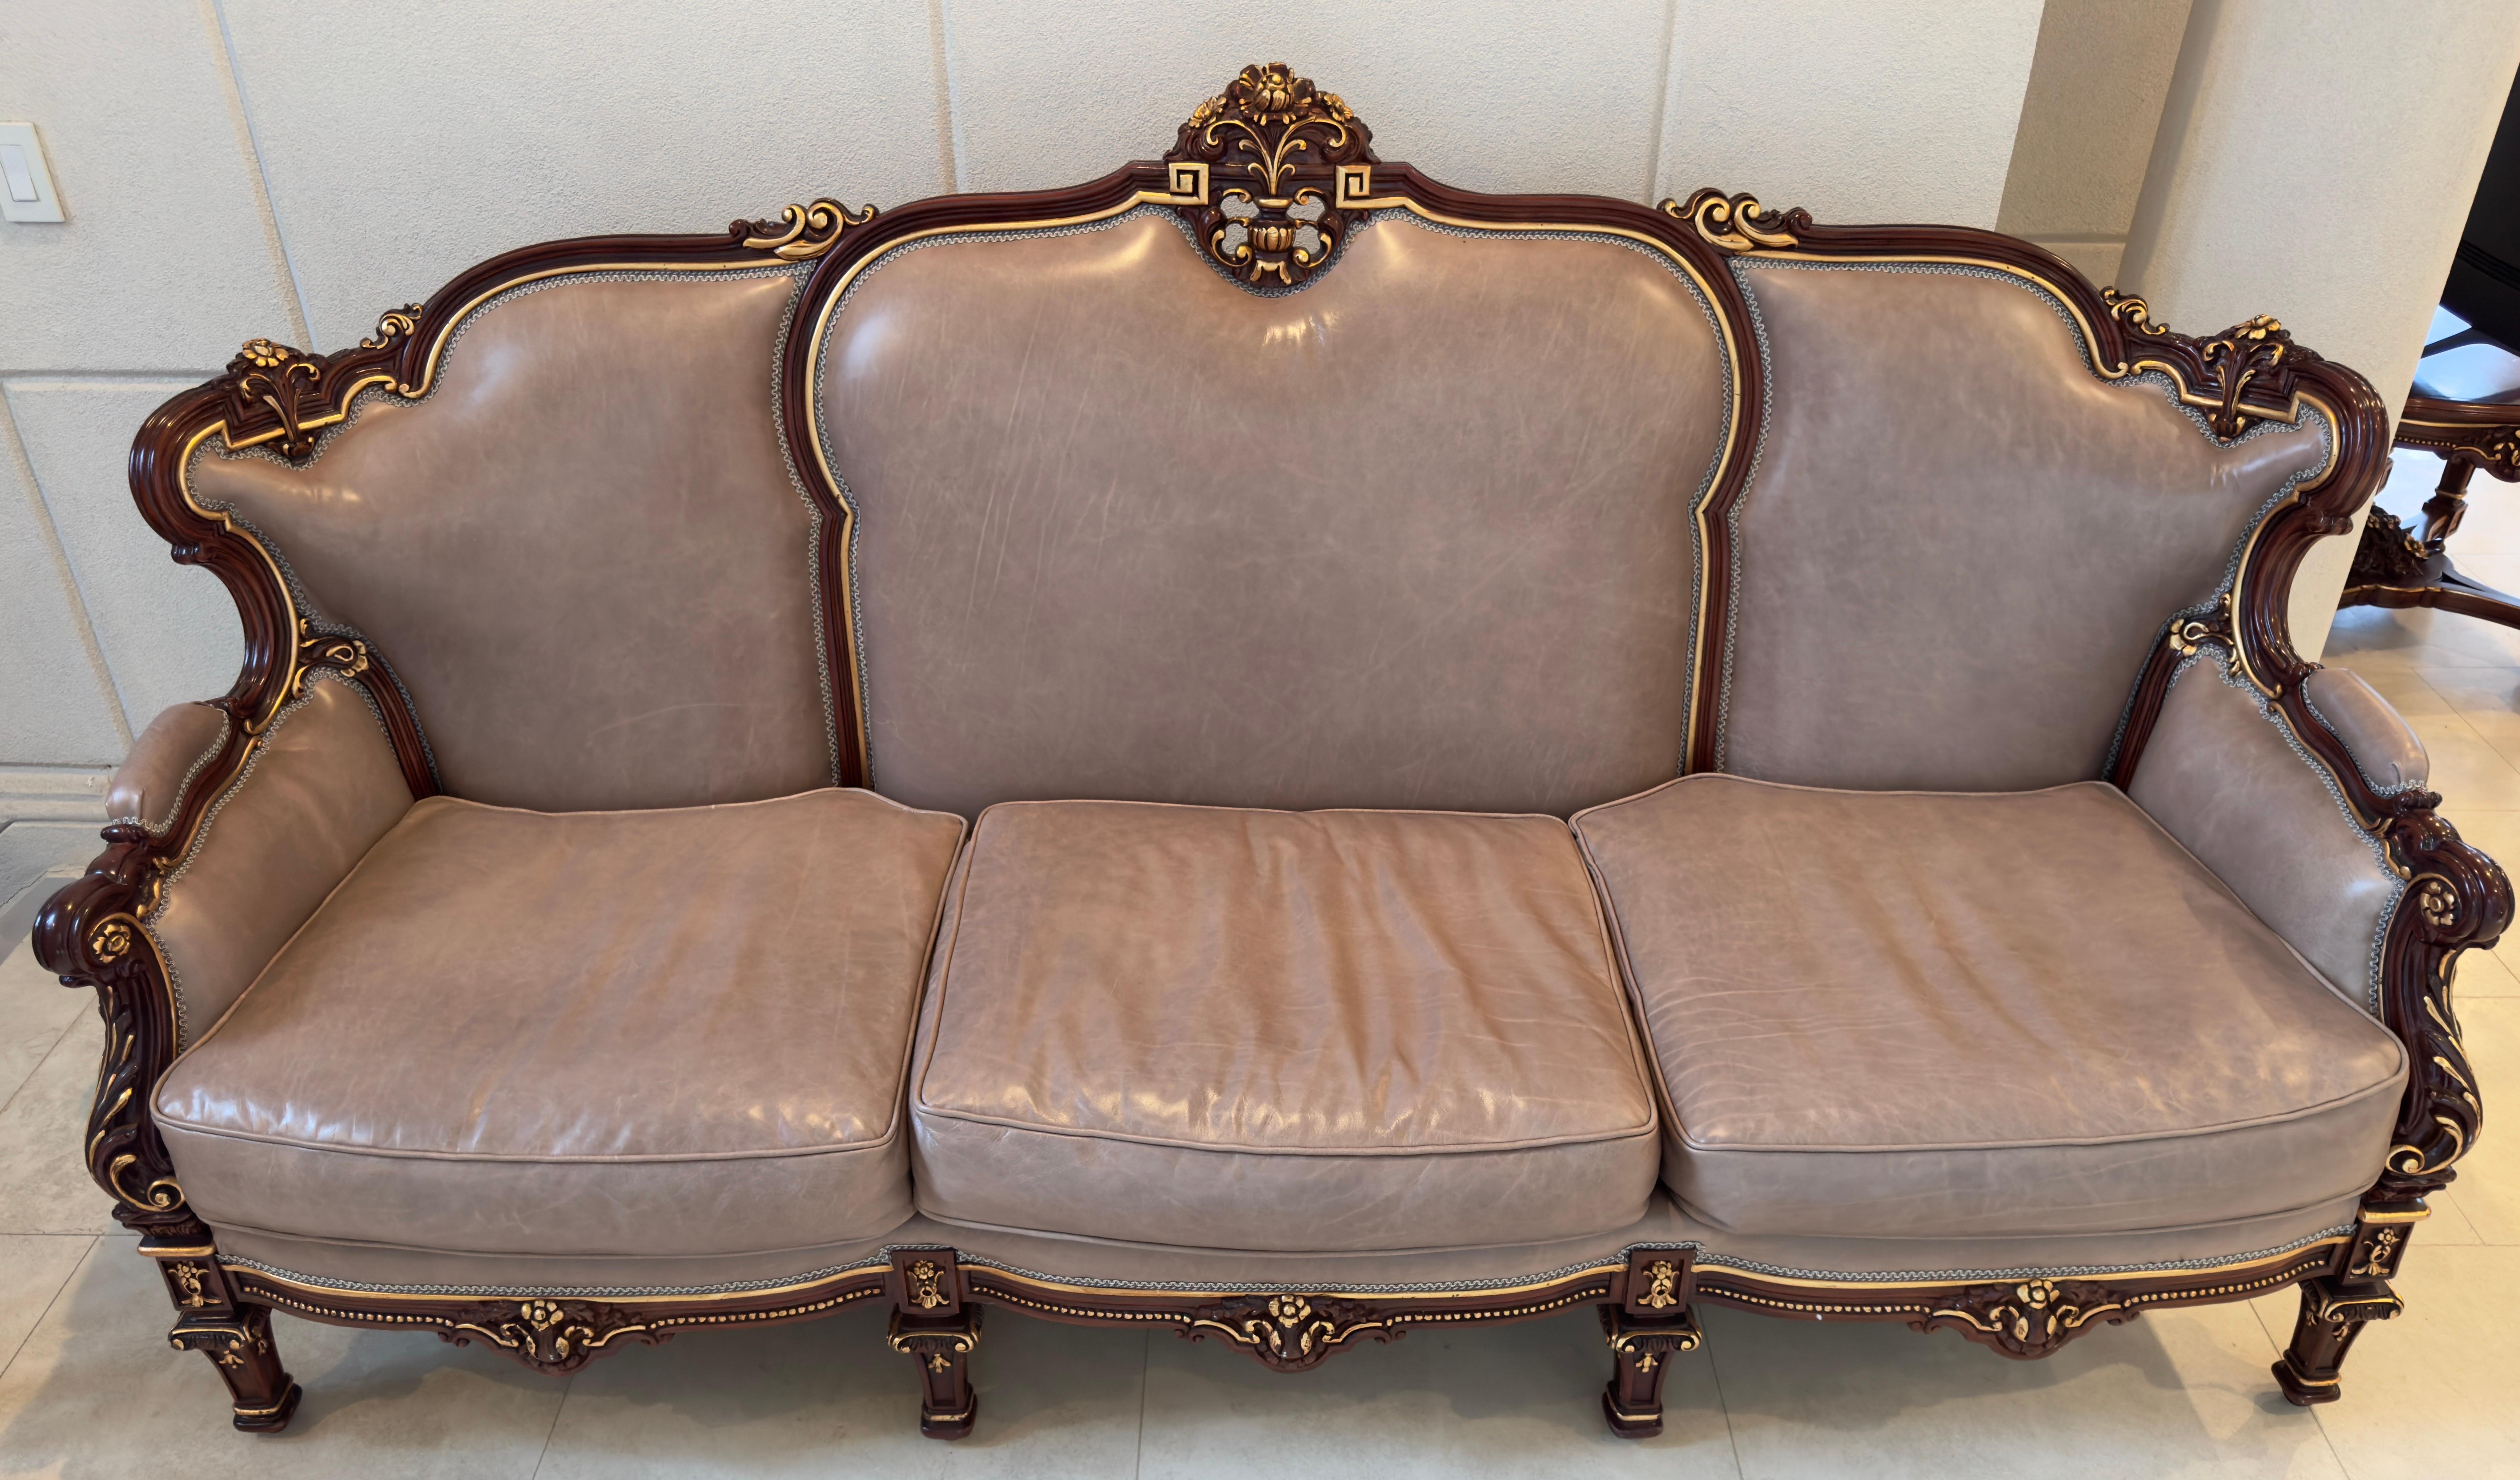 Un exquis canapé italien en cuir et acajou de style rococo. Imprégné de l'essence de l'opulence, ce canapé est une symphonie d'artisanat fin et de design intemporel.
Façonné dans l'acajou le plus fin, le cadre de ce canapé est une œuvre d'art en